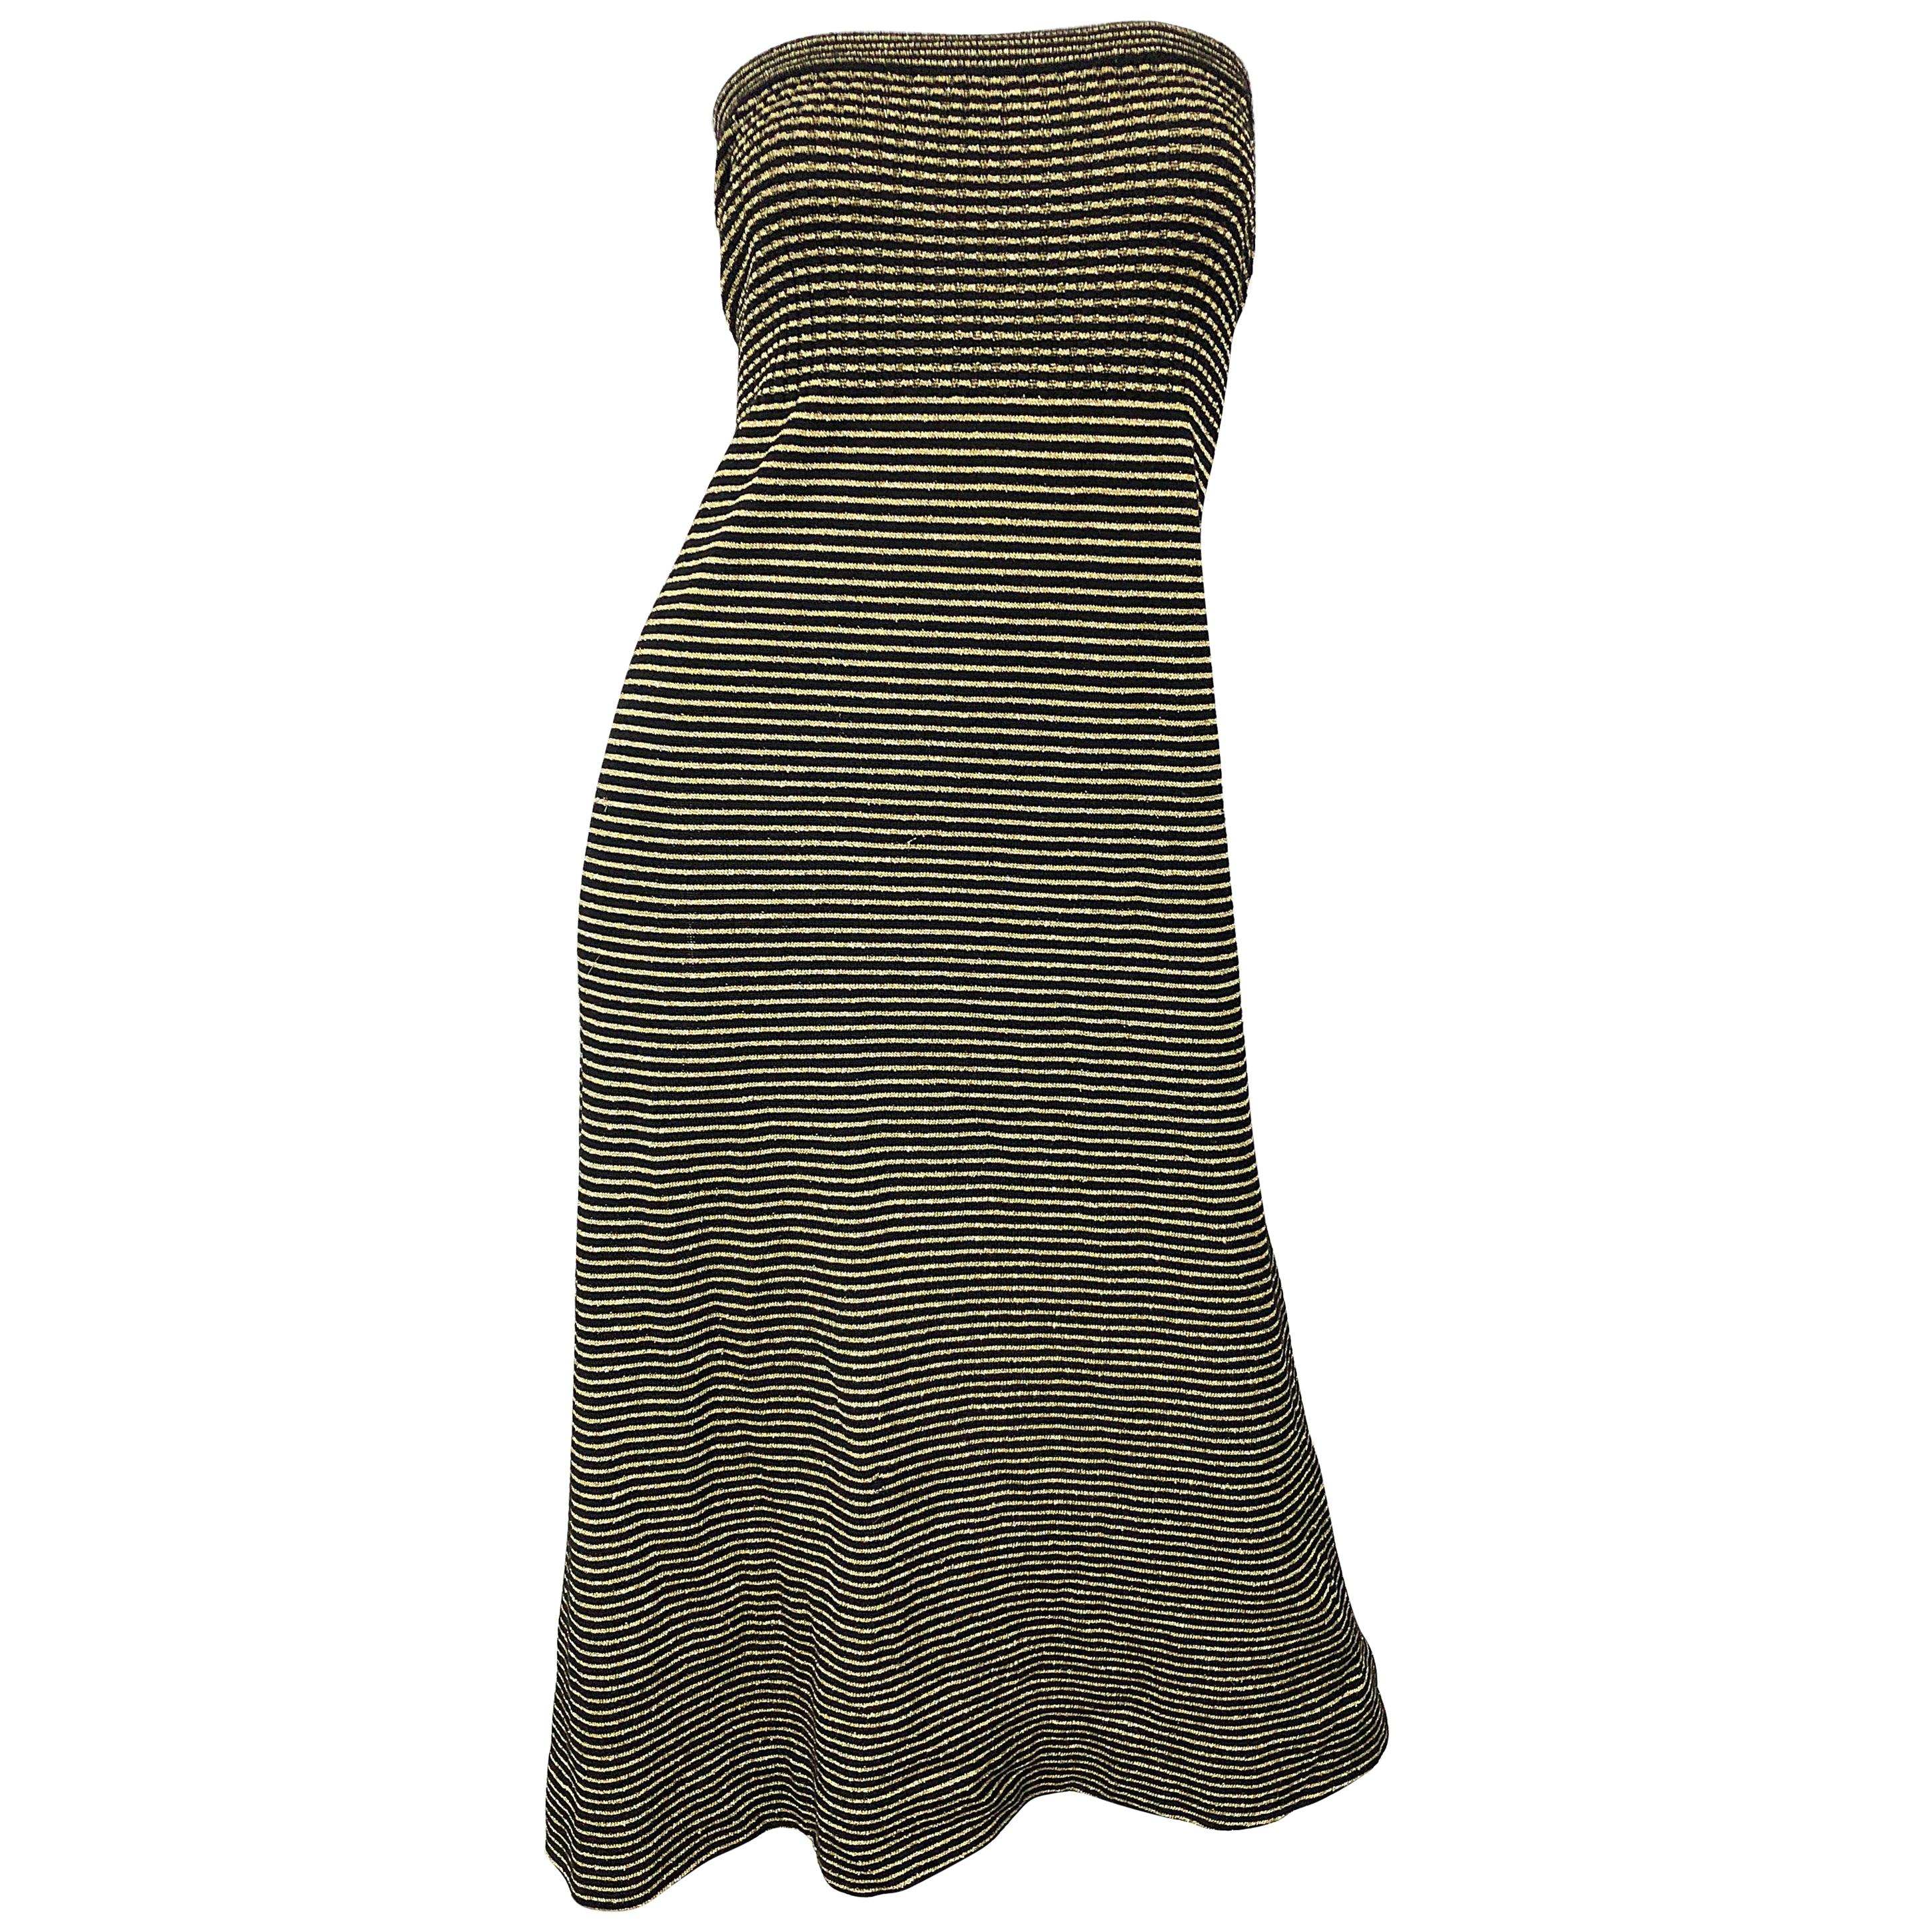 Vintage Yves Saint Laurent YSL 70s Gold Black Strapless Knit Dress or Maxi Skirt